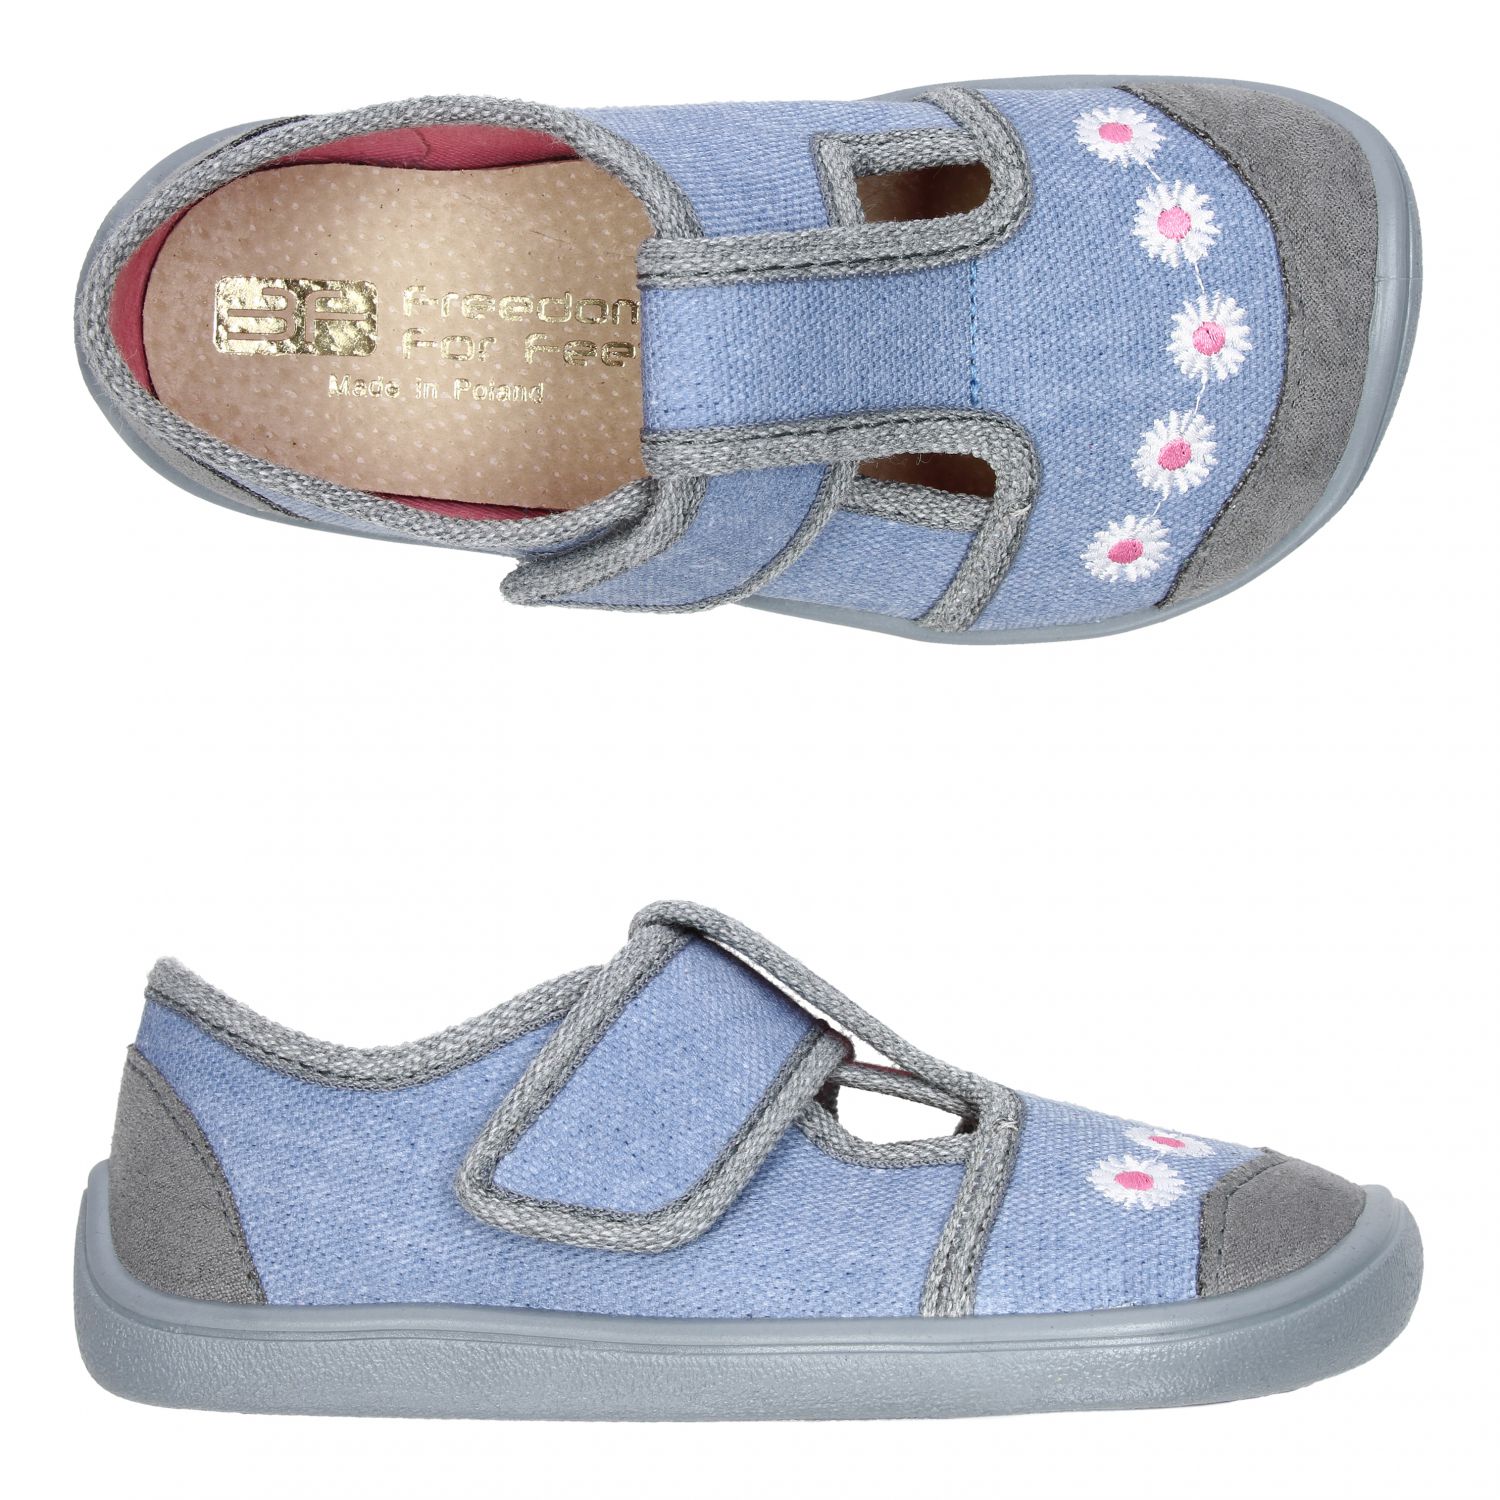 3F Barefoot papuče kvietky modré-na objednávku